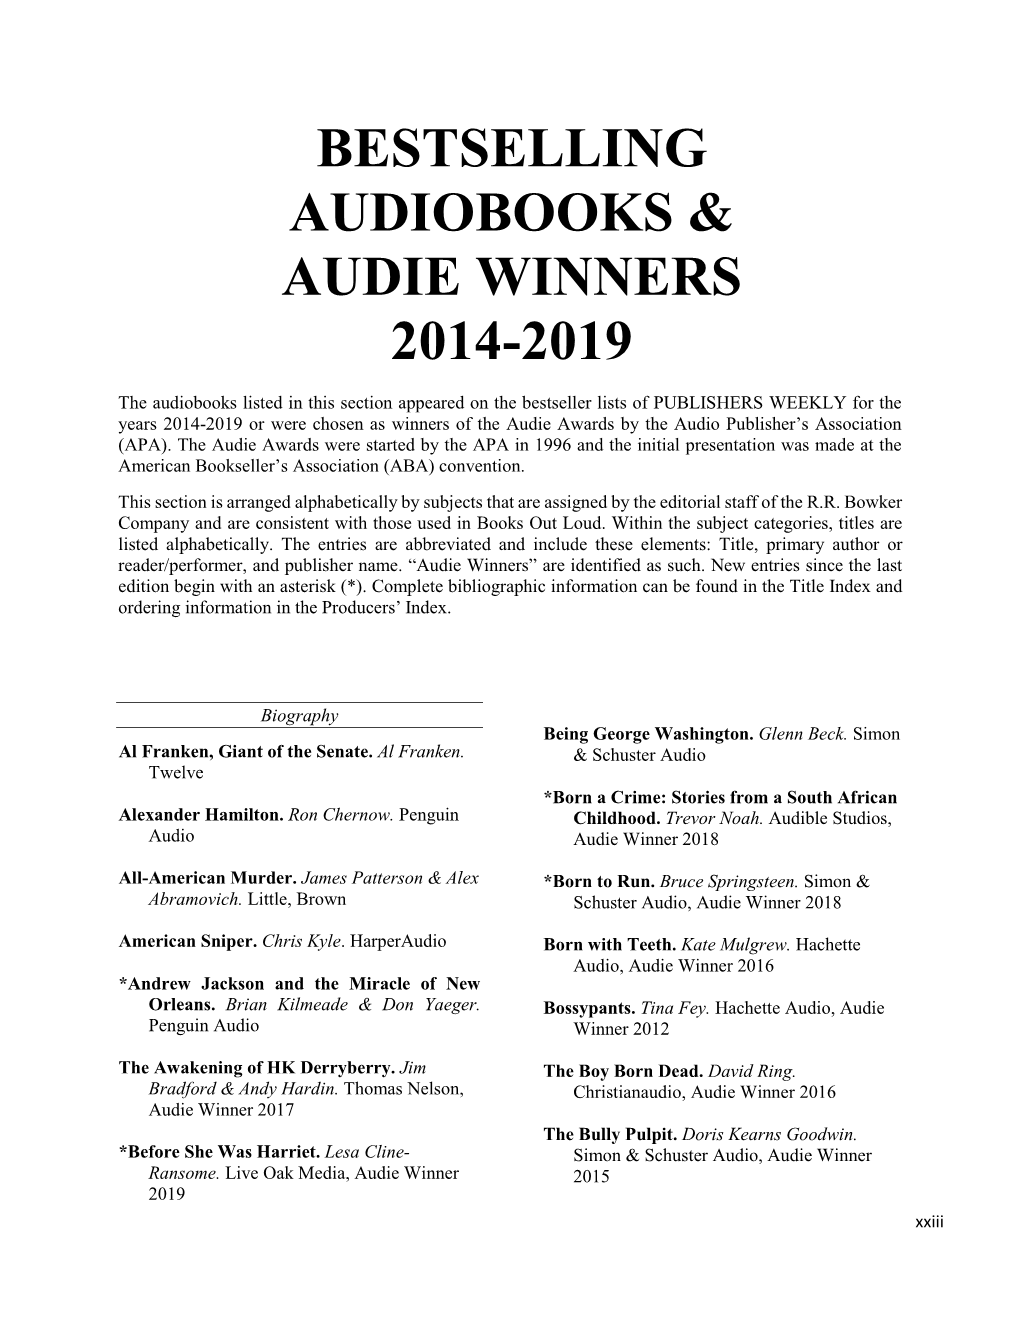 Bestselling Audiobooks & Audie Winners 2014-2019